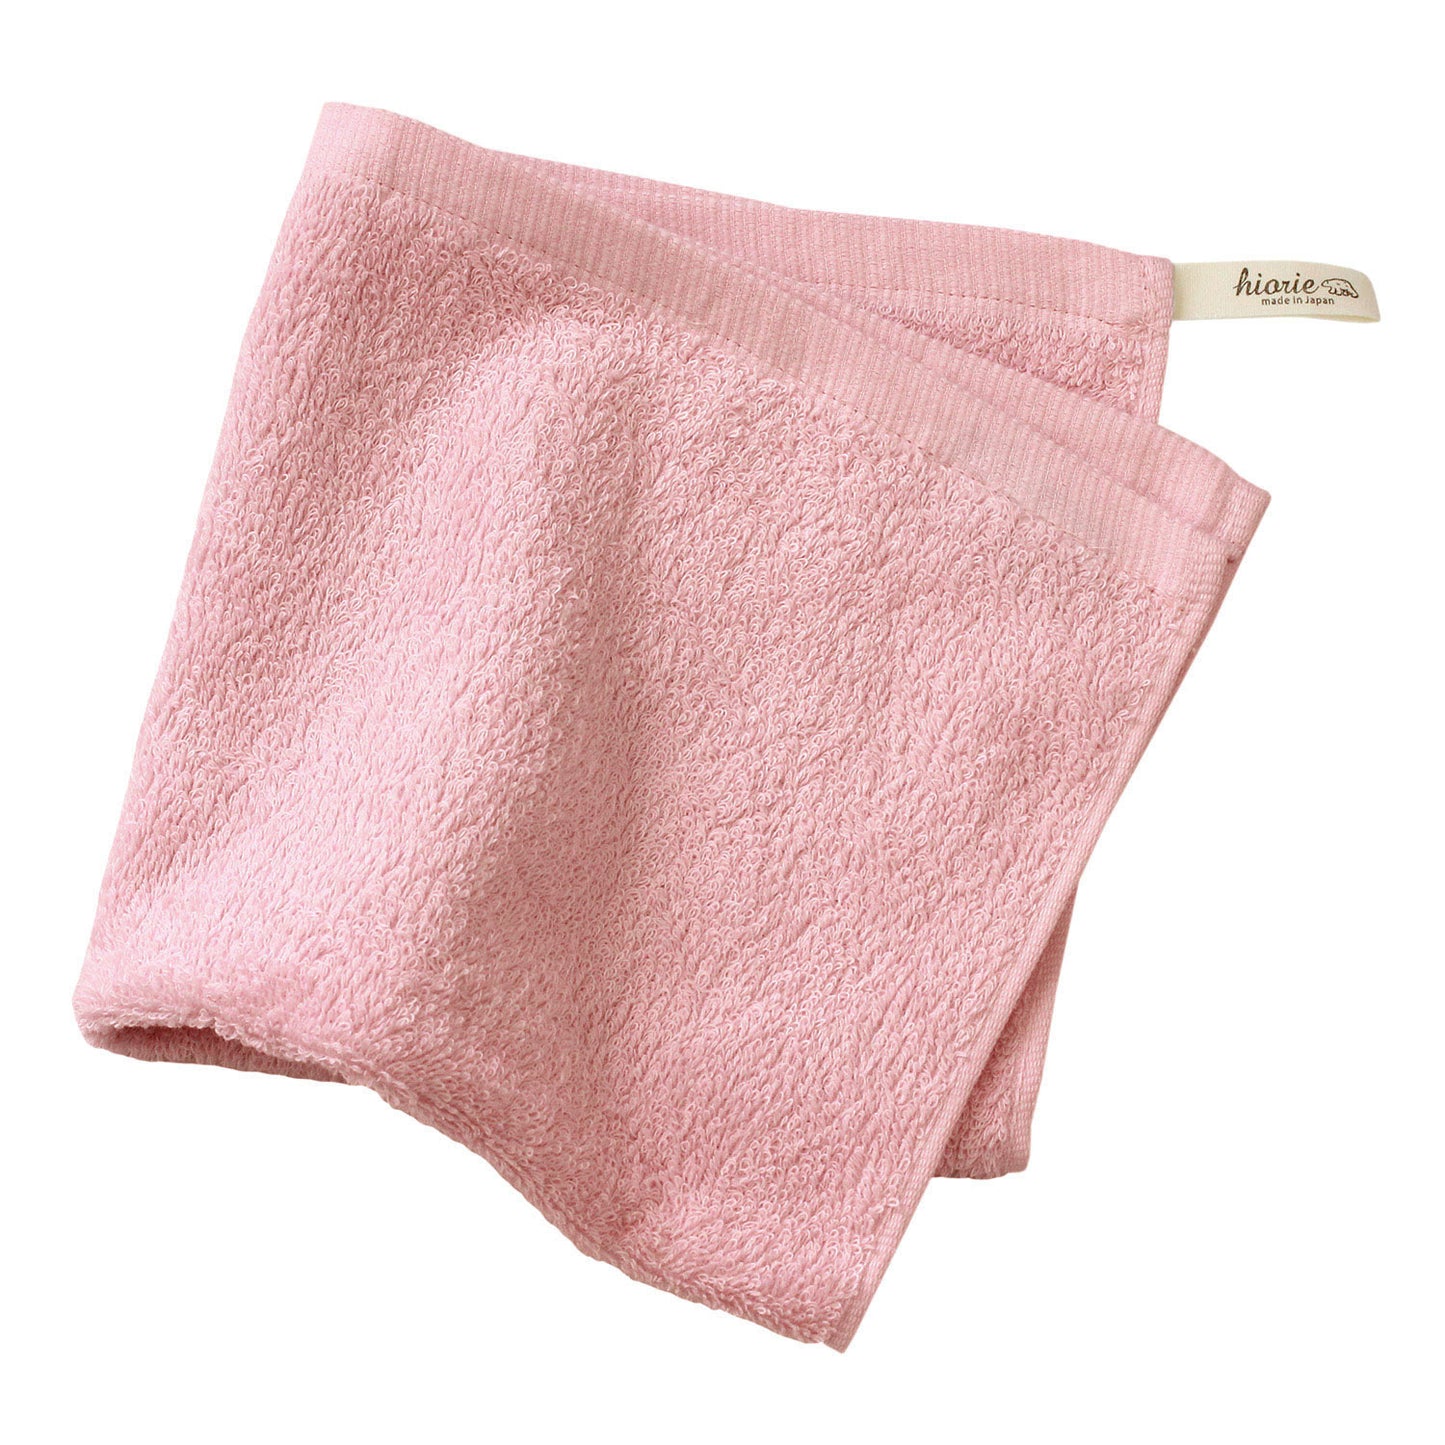 Senshu - ผ้าเช็ดมือที่ผลิตจากผ้าปัดเชื้อสายพันธุ์